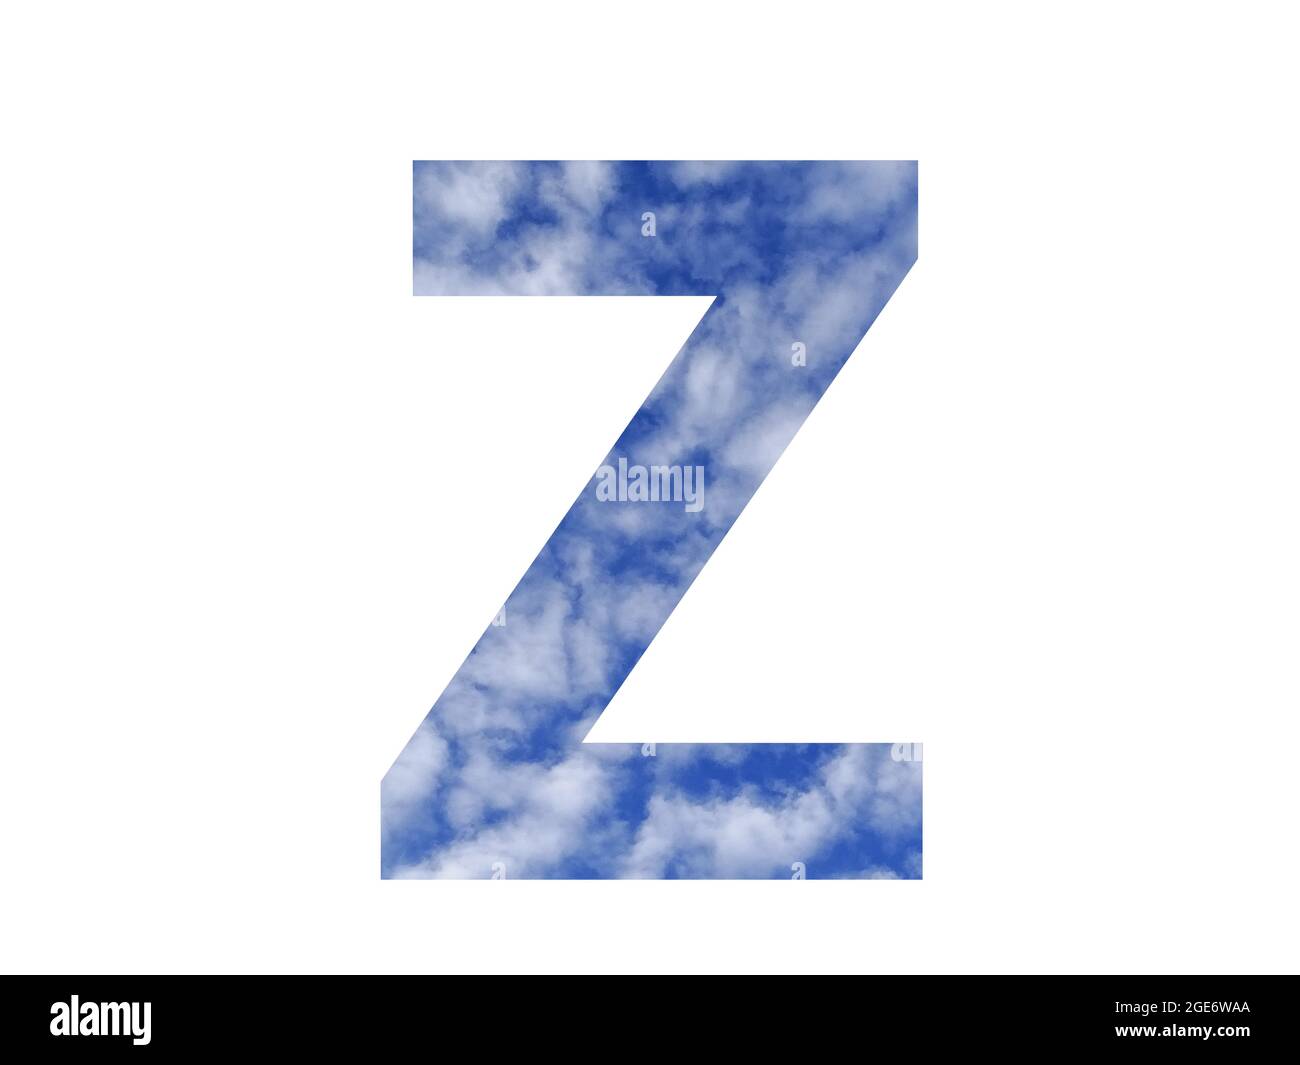 Lettre Z de l'alphabet faite d'un ciel bleu et de nuages blancs, isolés sur un fond blanc Banque D'Images